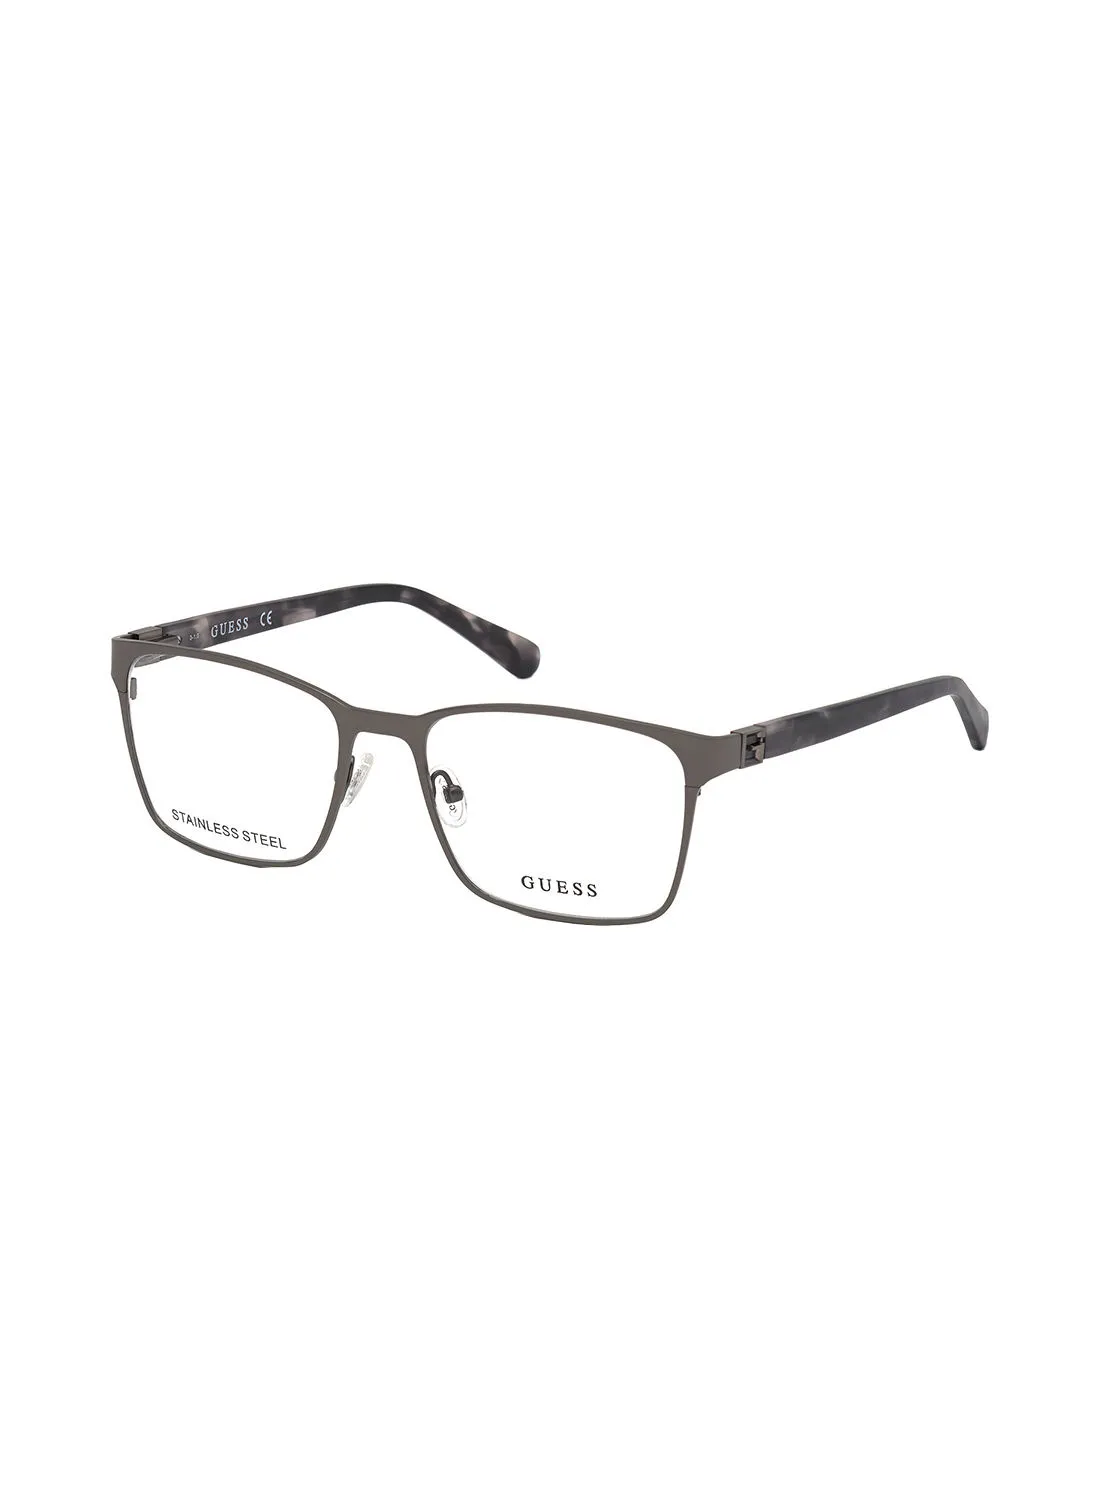 GUESS Square Eyewear Optical Frame GU5001900956